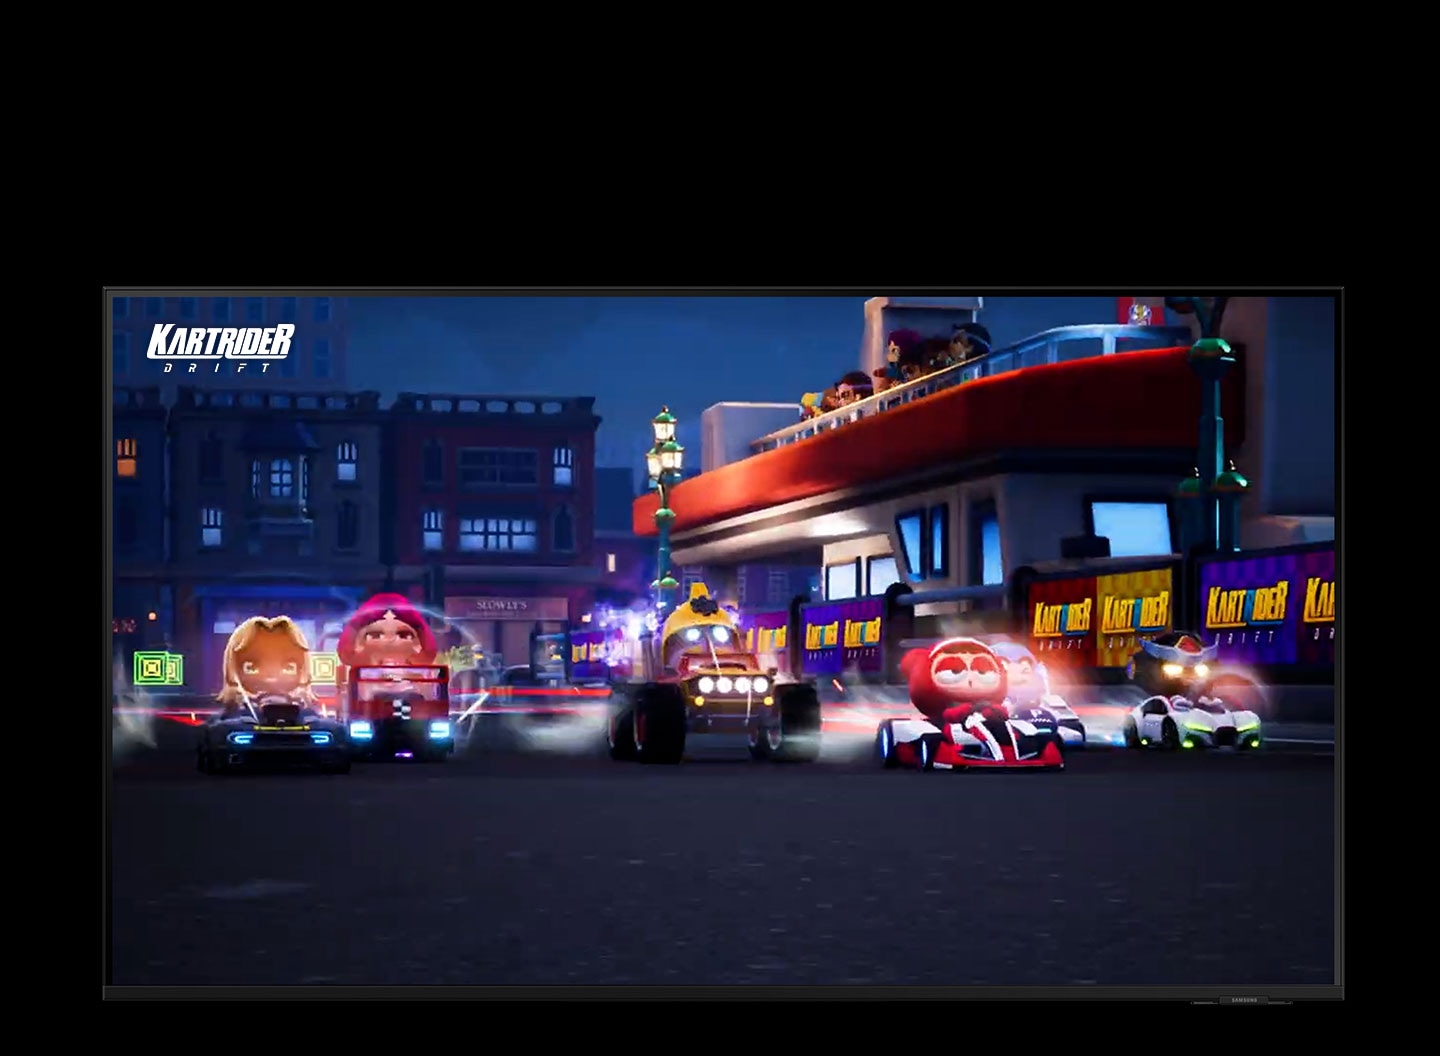 Sechs Fahrerfiguren fahren auf einer Rennstrecke. Um die Spieler herum sind helle Blitze zu sehen, die auf die schnelle Starthilfeleistung hinweisen. Hinter ihnen befinden sich Gebäude und Zuschauer, die den Fahrern zujubeln. An der Wand ist das Logo des Spiels \"Kartrider\" zu sehen.